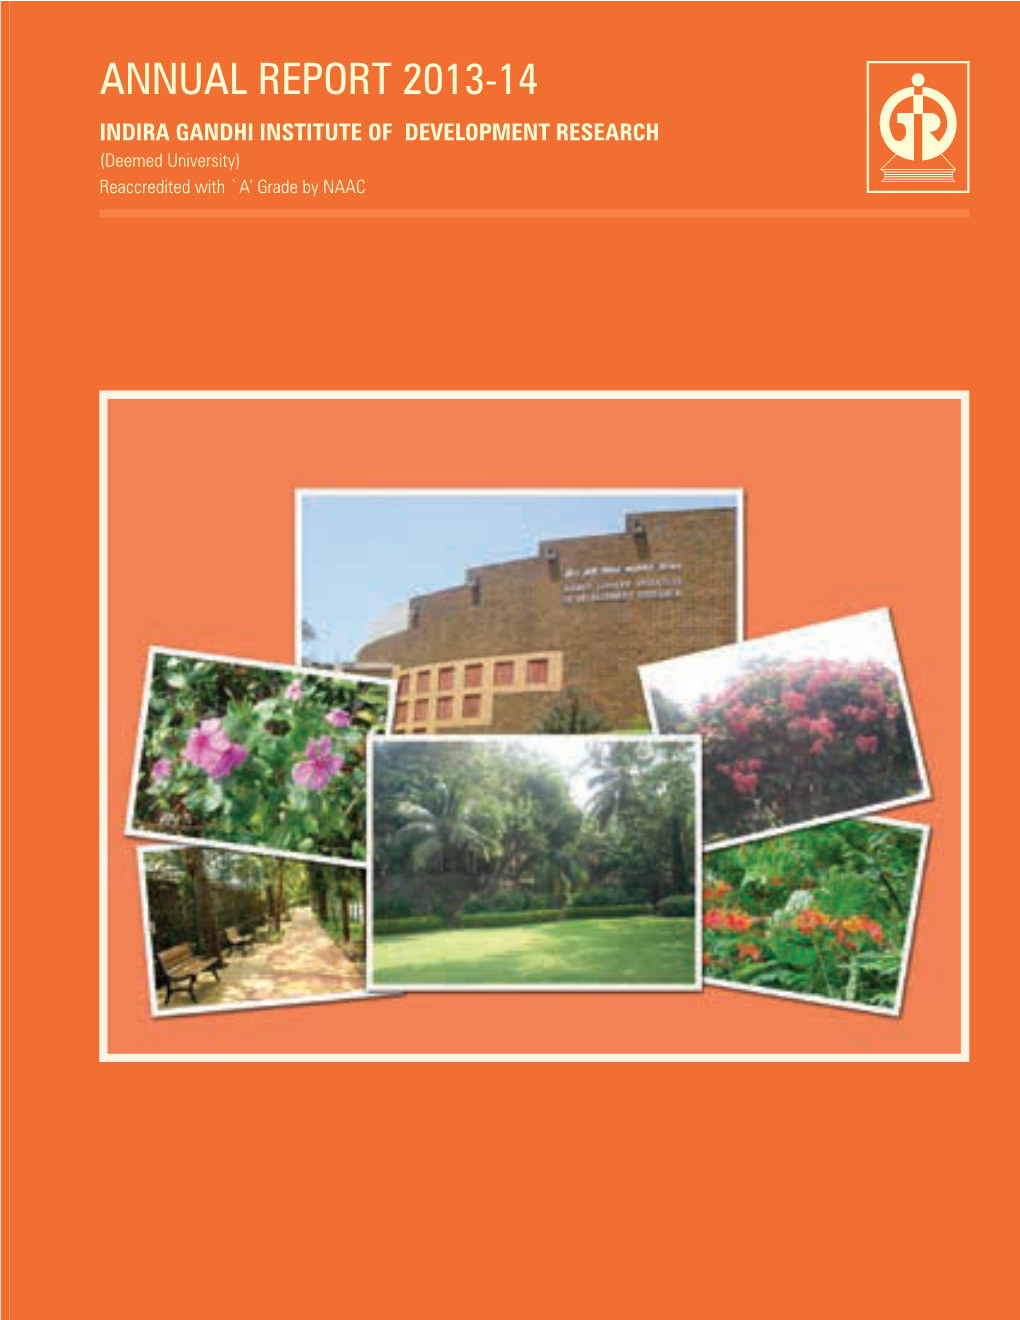 IGIDR Annual Report 2013-2014